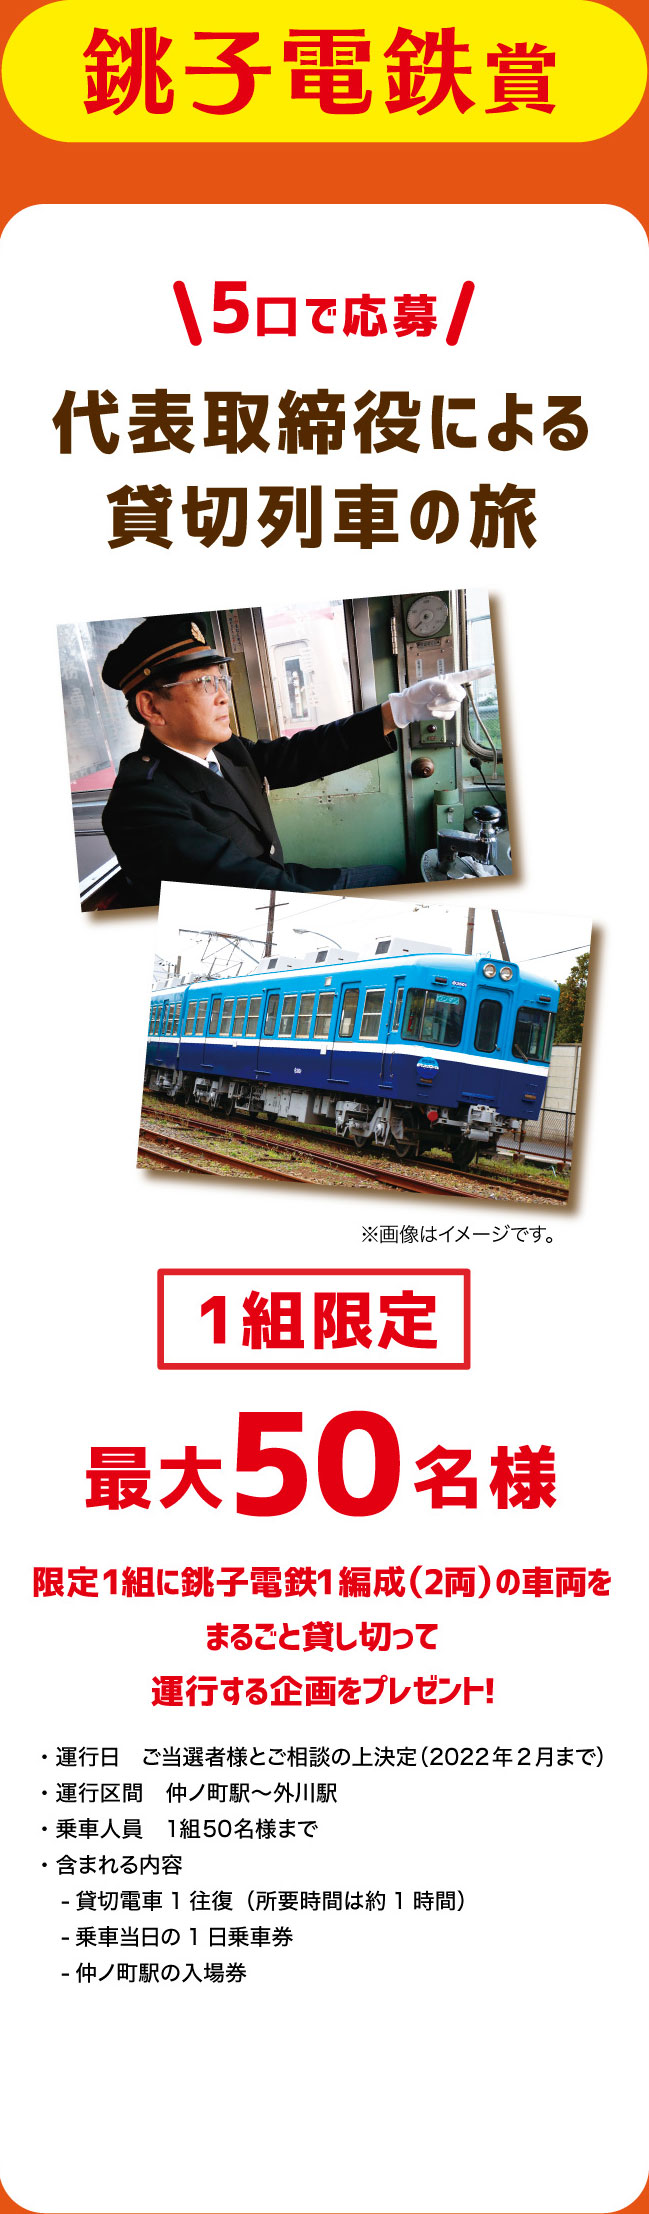 銚子電鉄賞 代表取締役による貸切列車の旅 1組限定 最大50名様